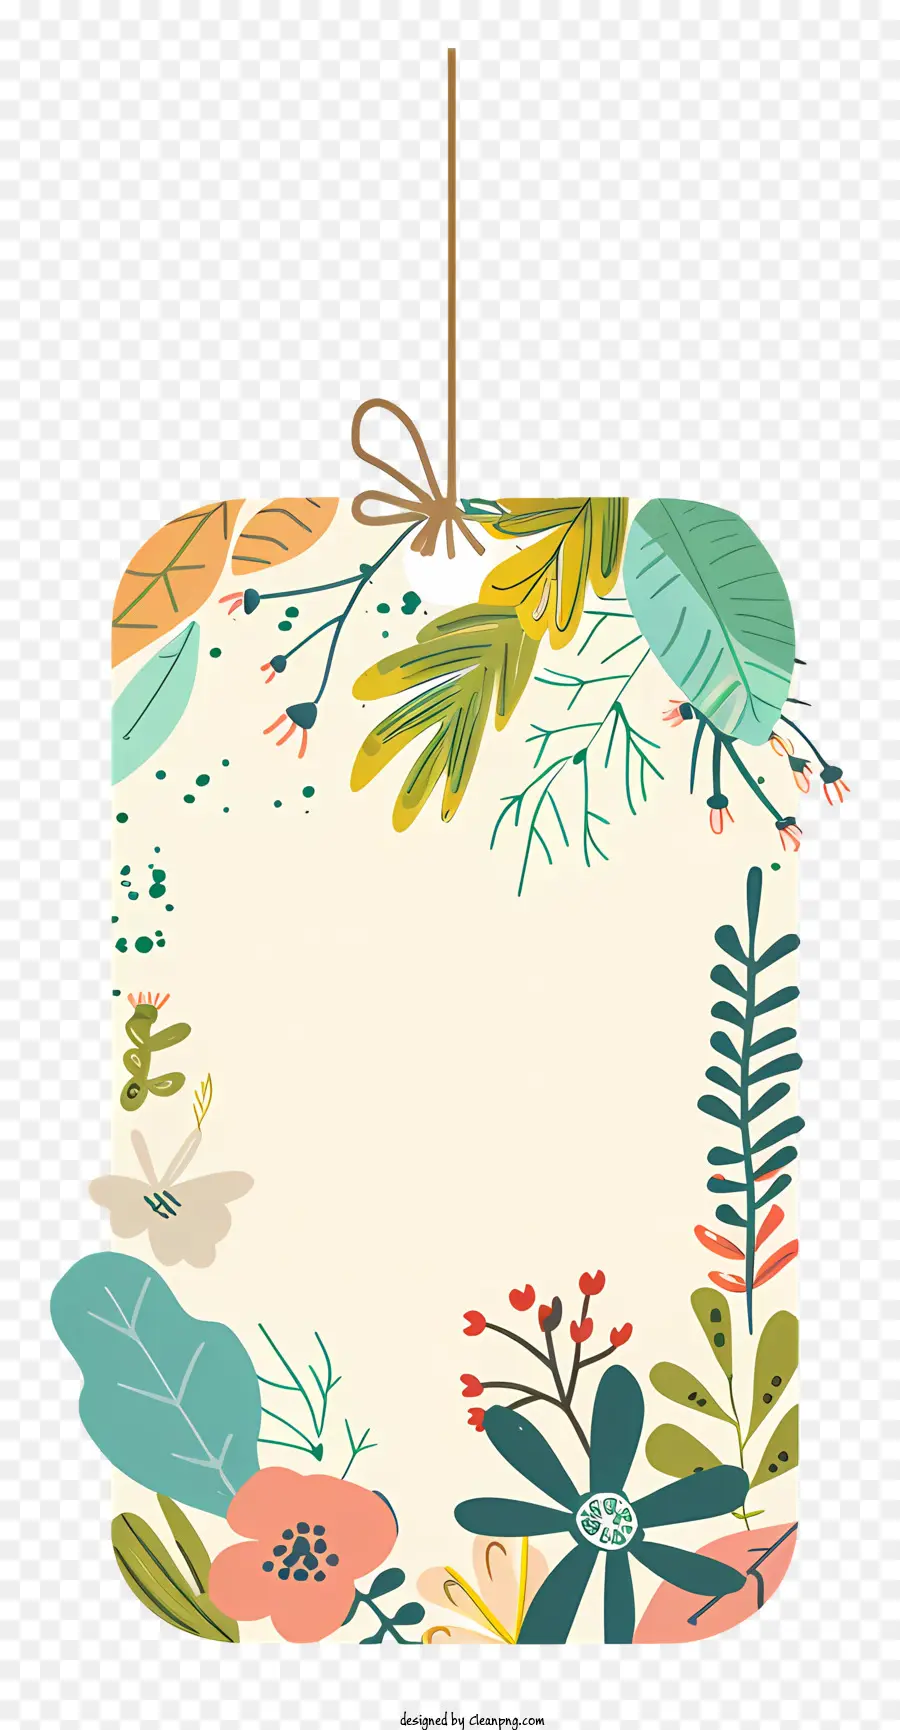 Blume, Abbildung - Farbenfrohe, minimalistische Illustration von Blumen und Blättern